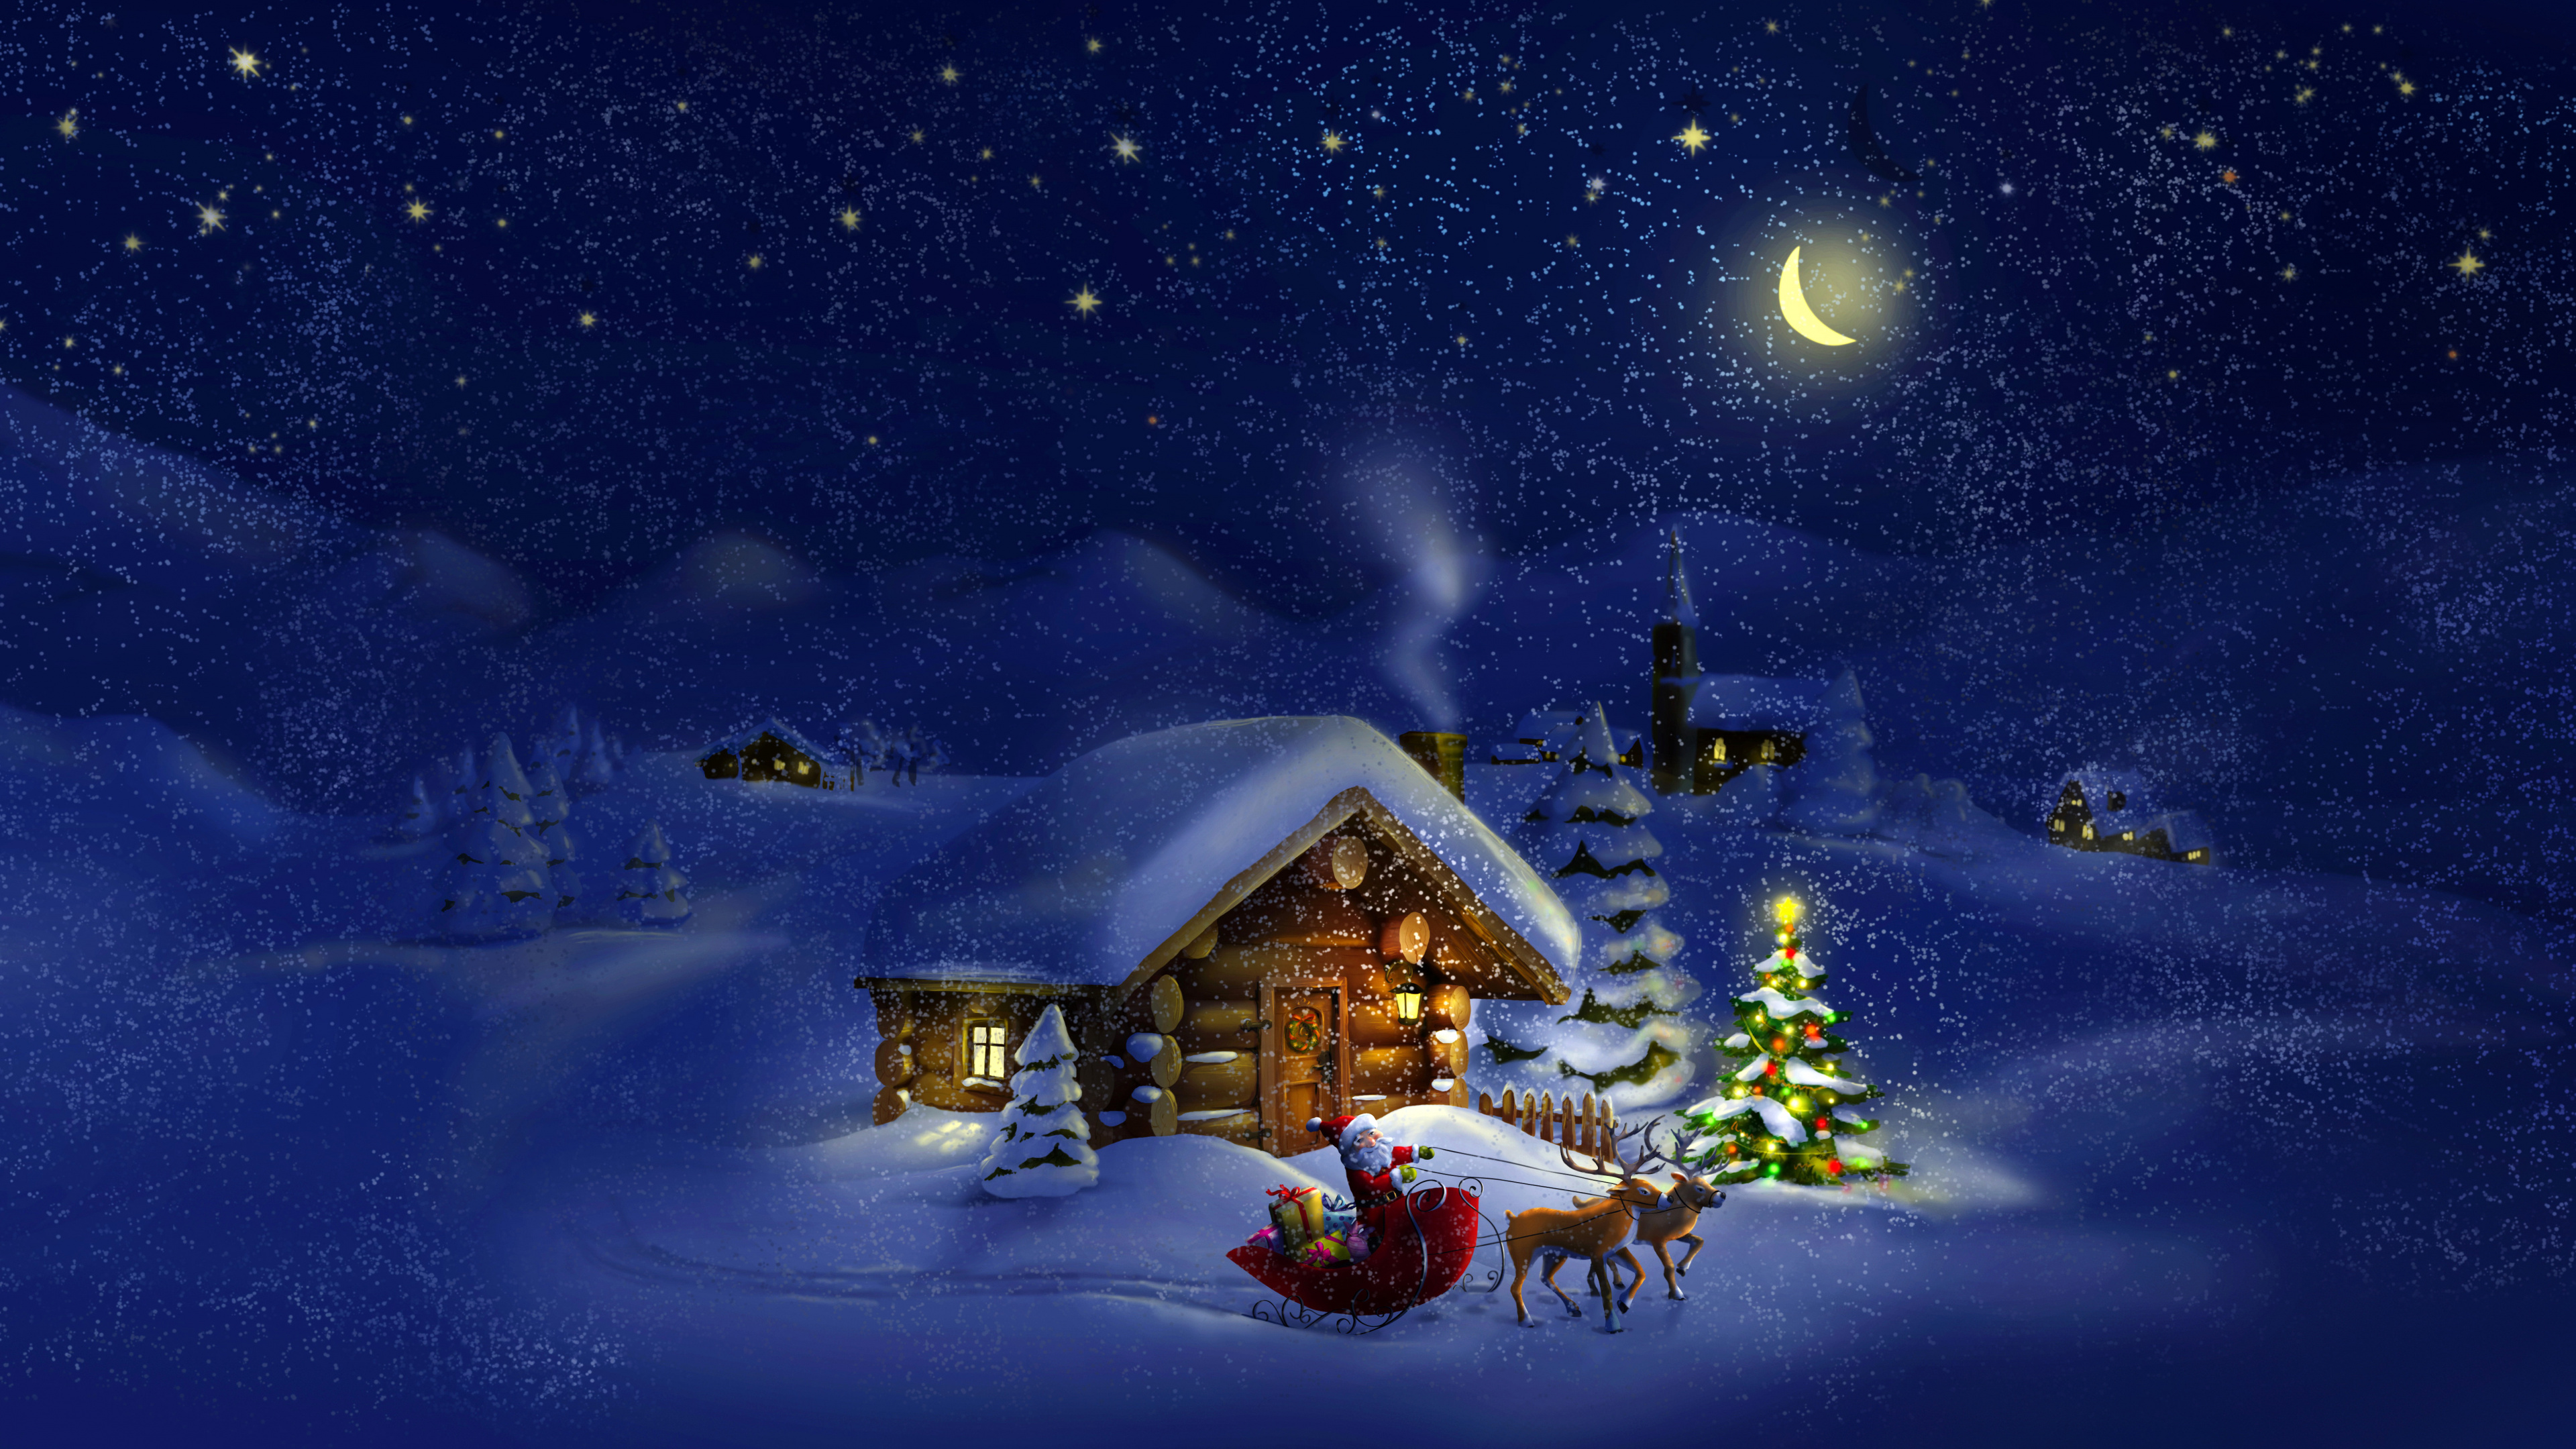 Le Jour De Noël, Santa Claus, Hiver, Neige, Nuit. Wallpaper in 3840x2160 Resolution